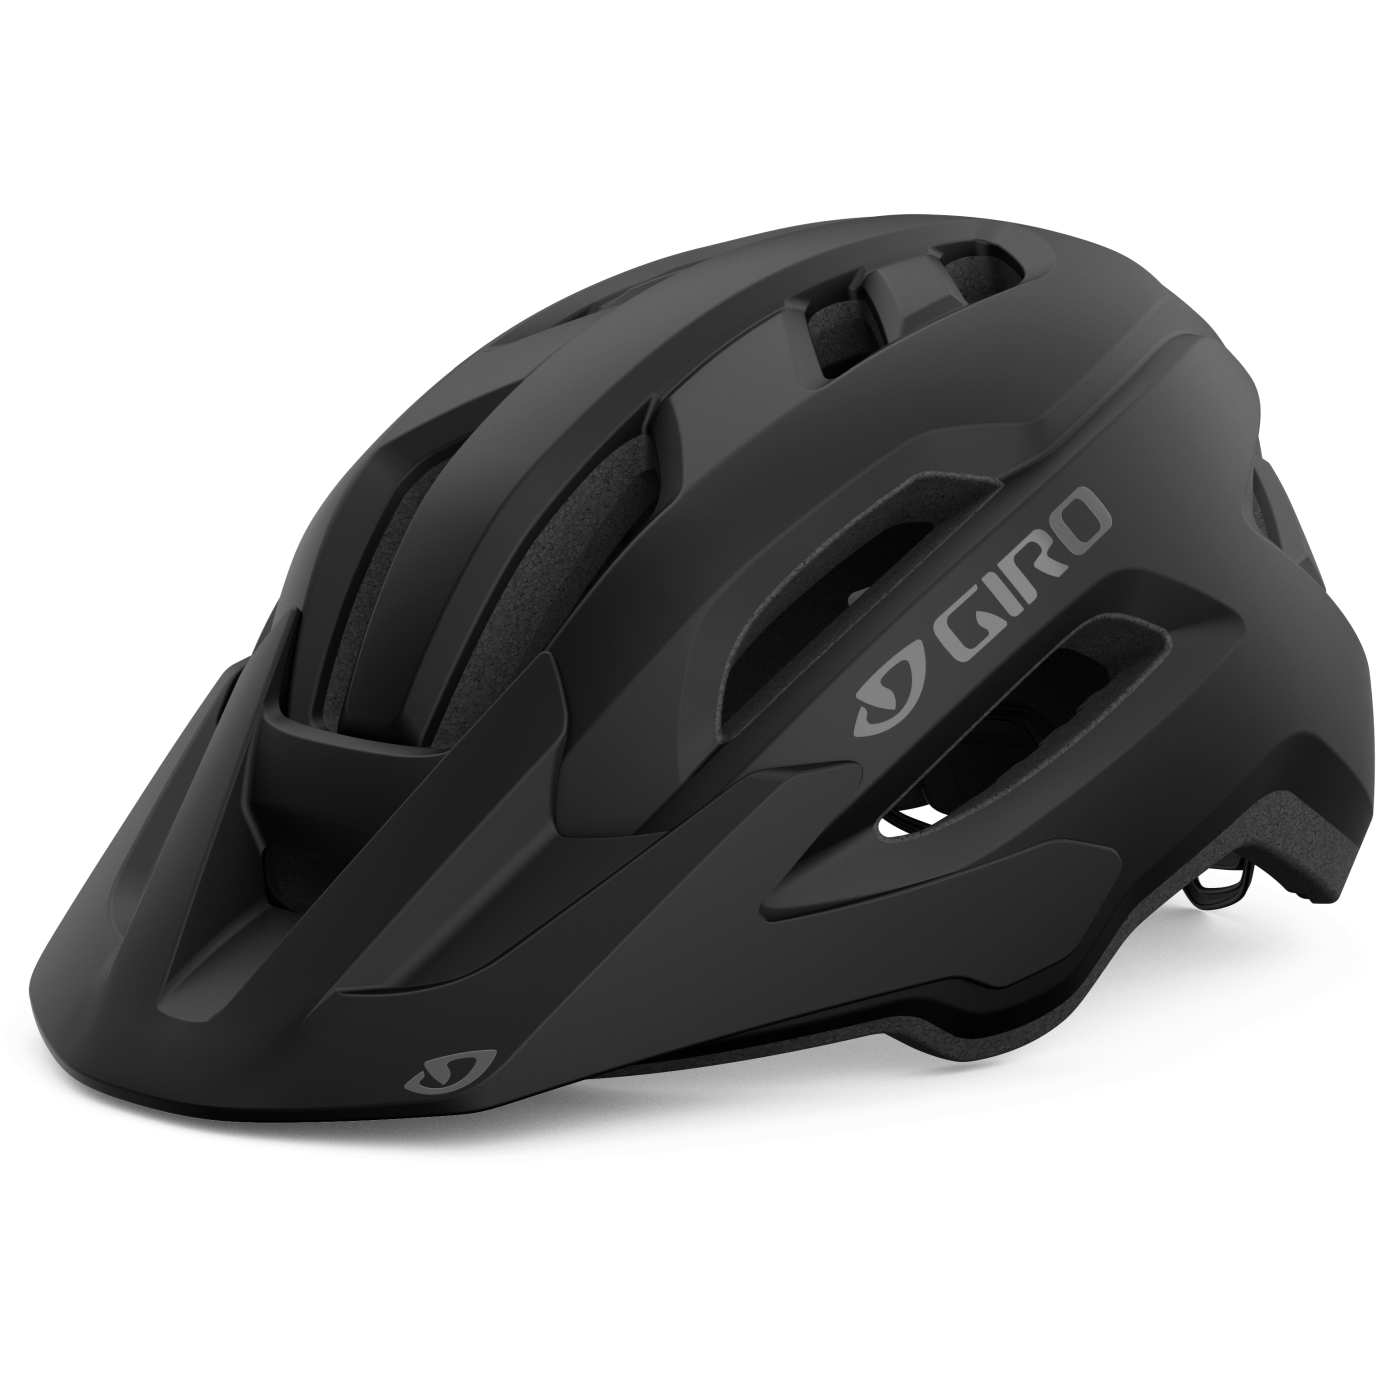 Produktbild von Giro Fixture MIPS II Helm - matte black/titanium